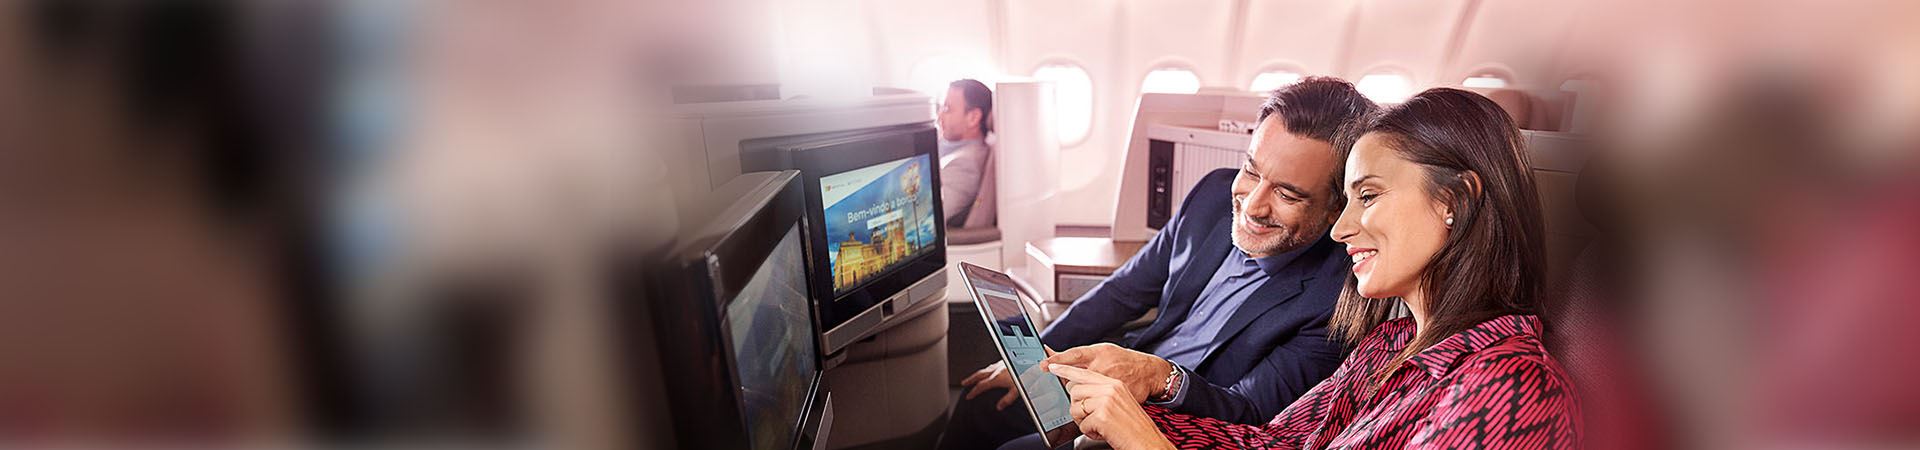 Nahaufnahme einer lächelnden Frau und eines lächelnden Mannes, die in einem Flugzeug sitzen. Die Frau hält ein Tablet in der Hand, und der Mann blickt darauf. Sie zeigen beide auf den Bildschirm des Tablets. Vor ihnen befinden sich zwei Bildschirme, die in den Sitzen des Flugzeugs eingebaut sind.